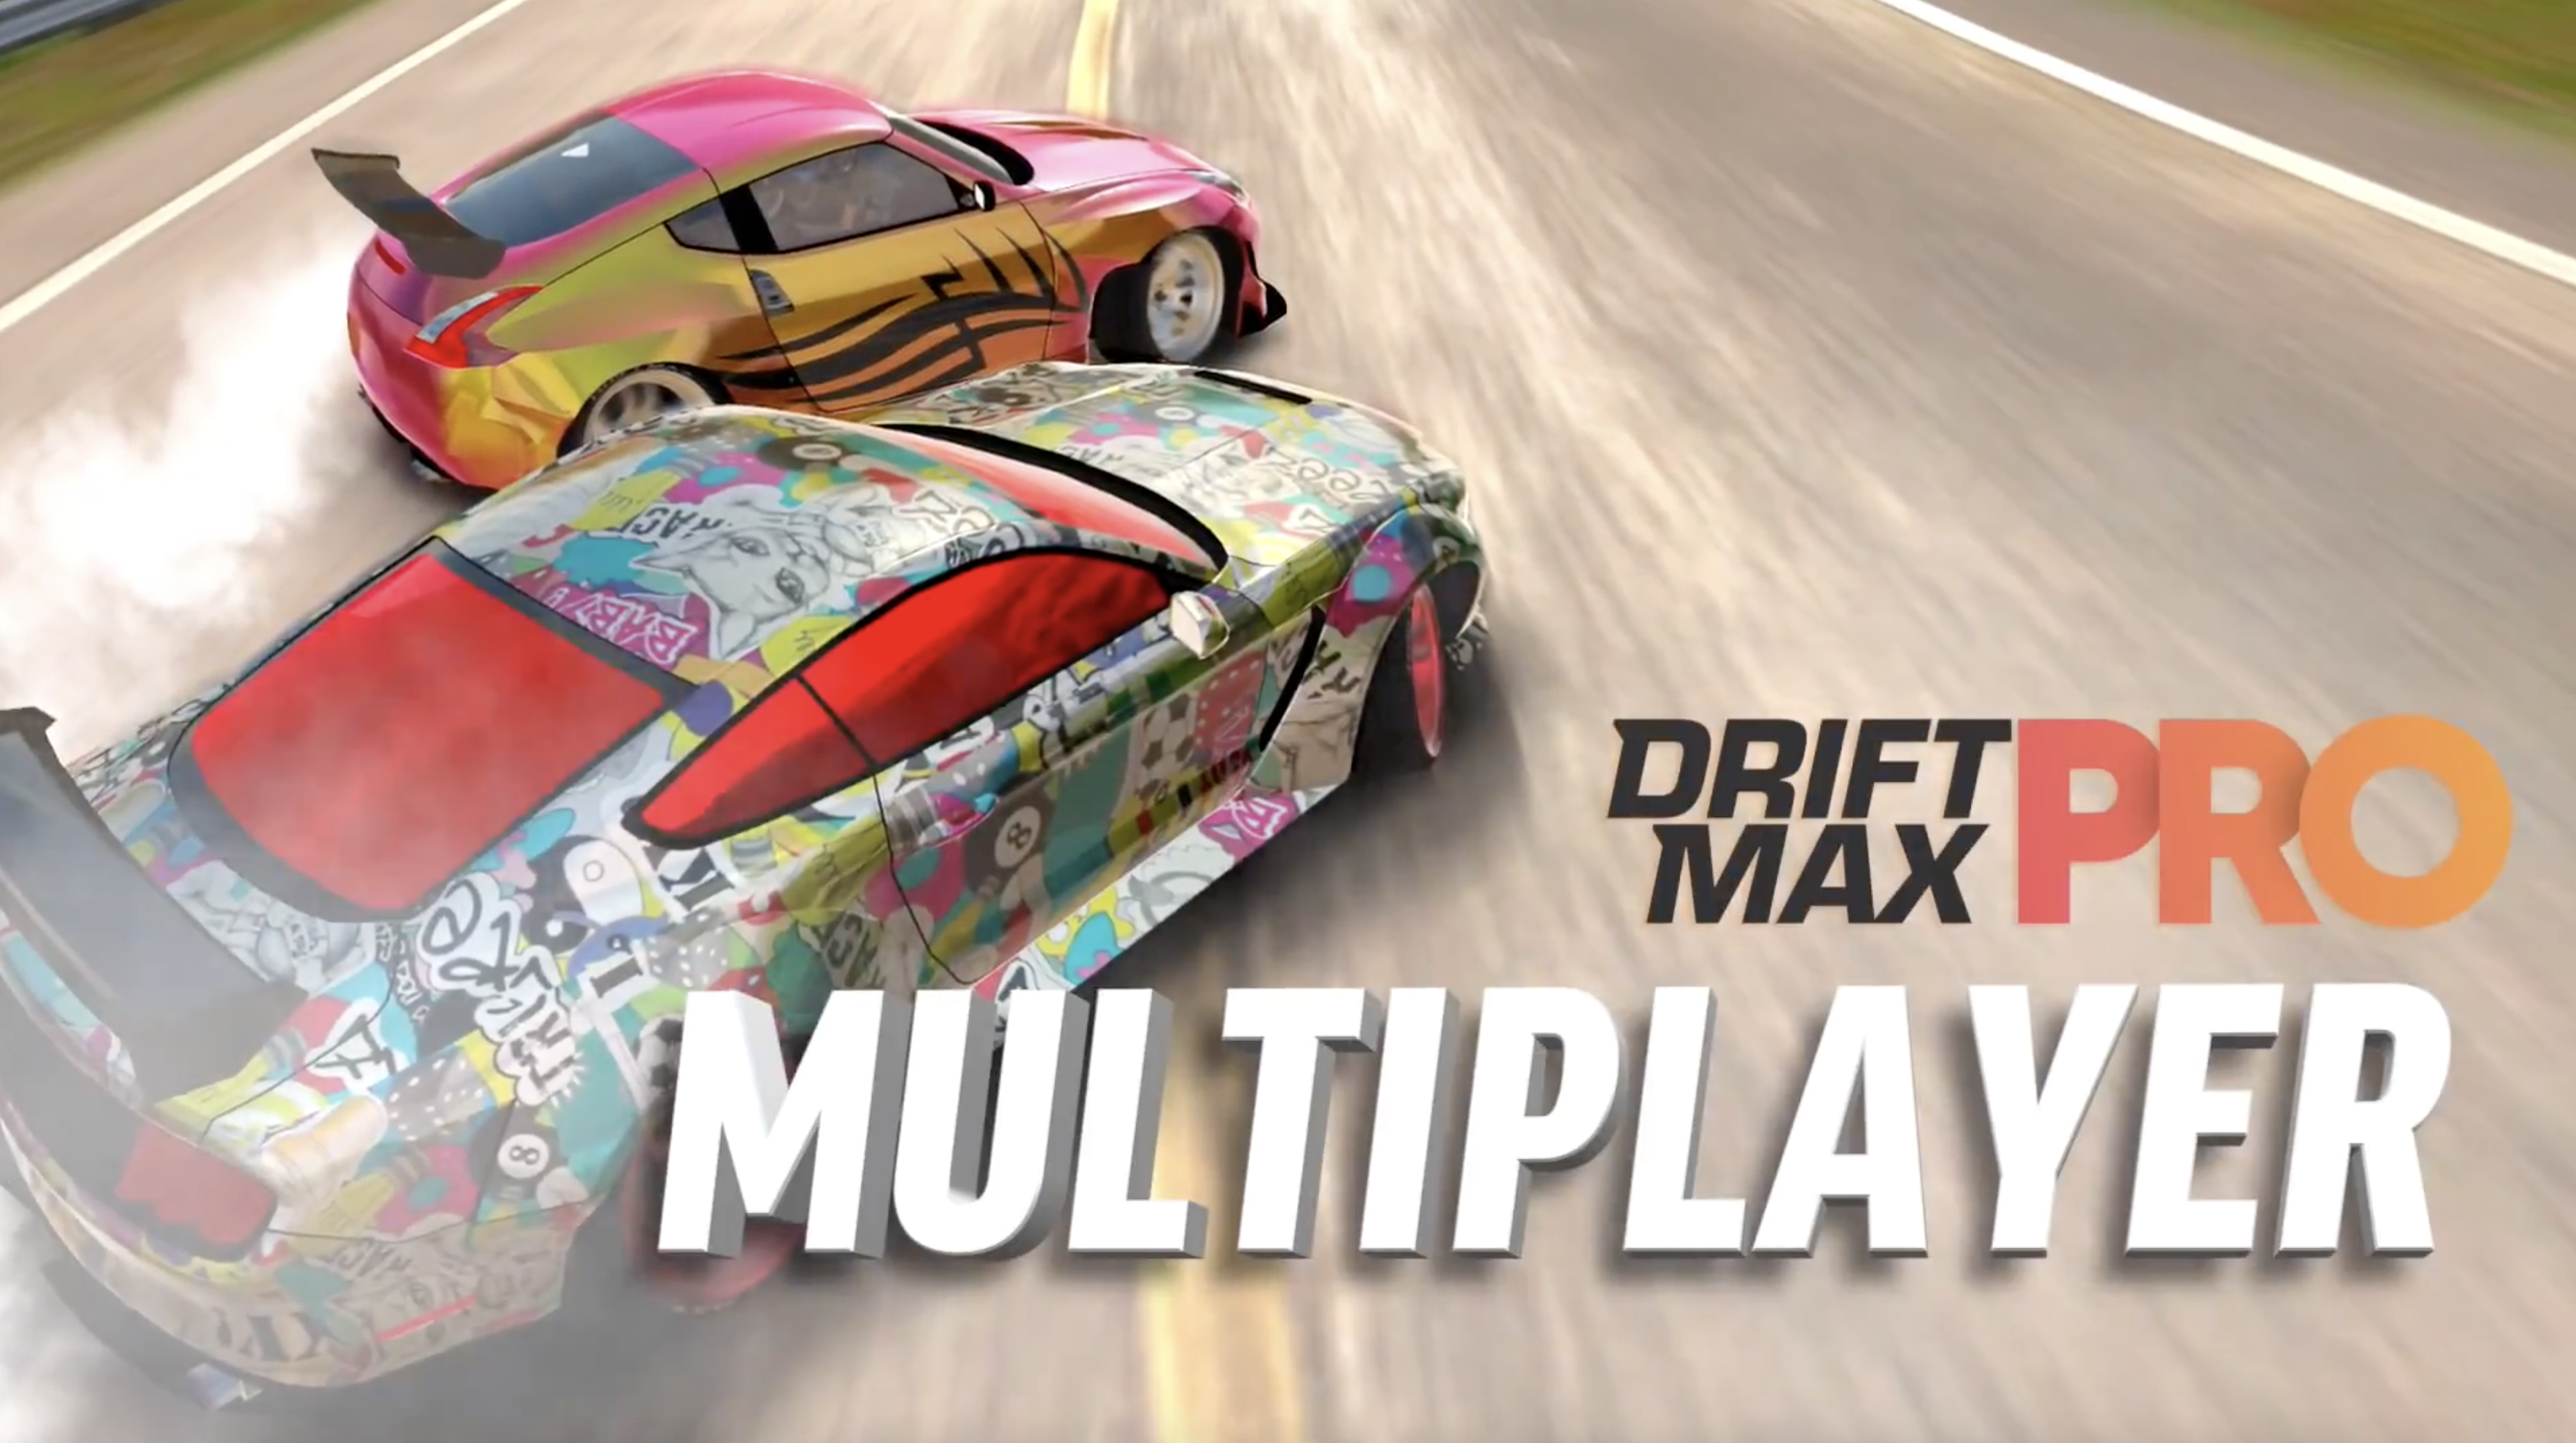 Car Drift Max Drive by Moso Games